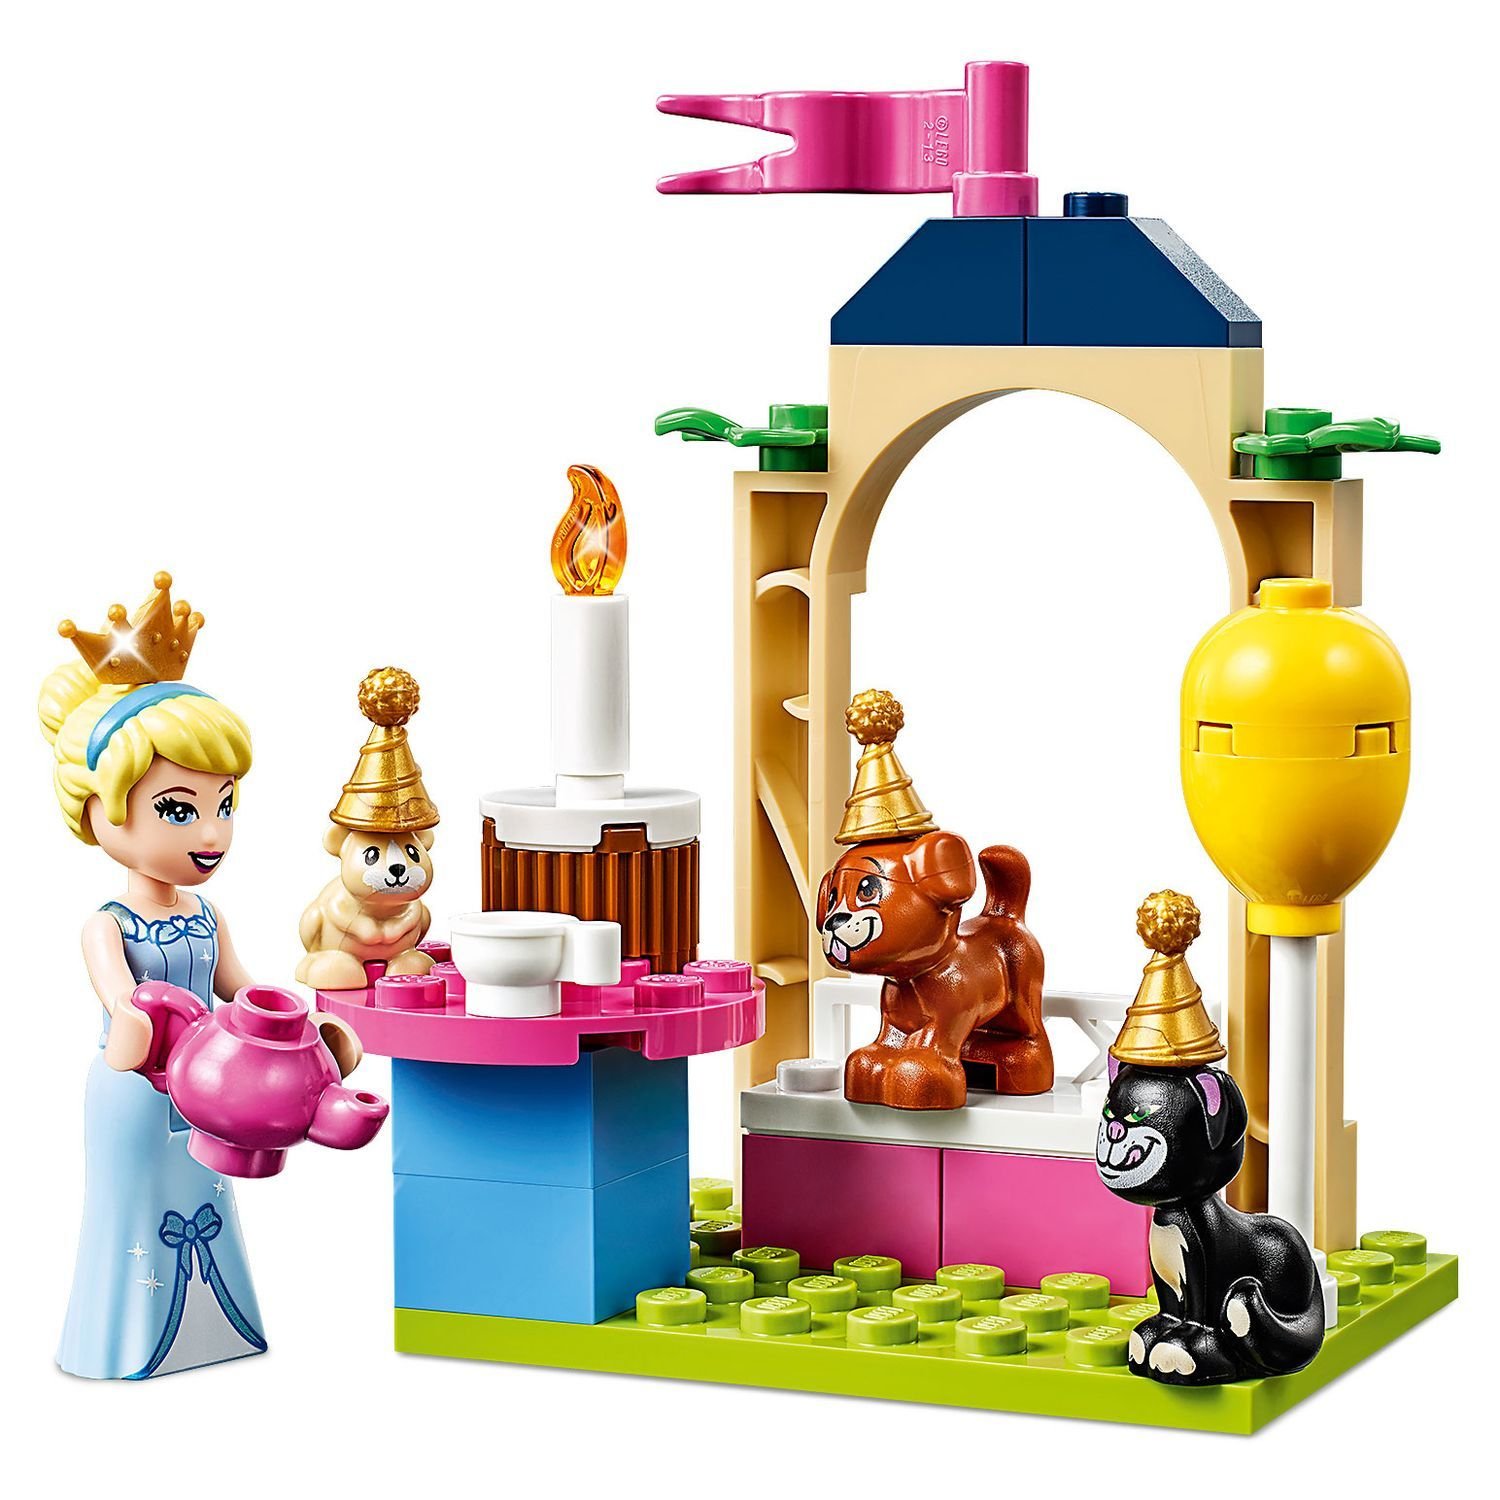 Lego Disney Princess 43178 Праздник в замке Золушки